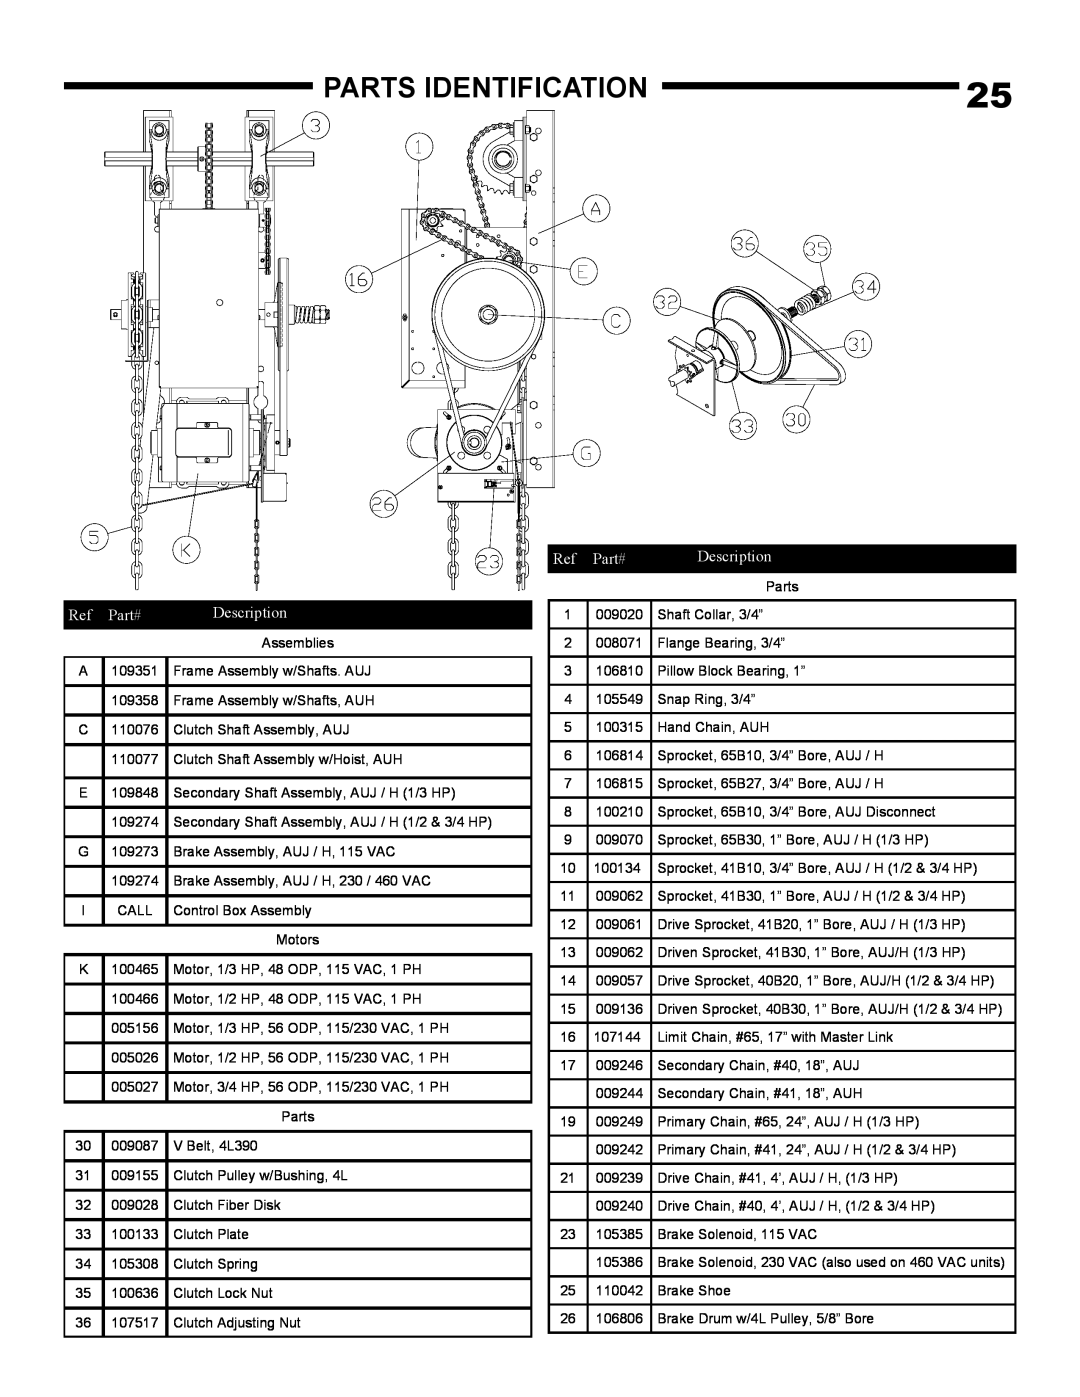 Linear AUH-S, AUJ-S owner manual Parts Identification, Part#, Description 